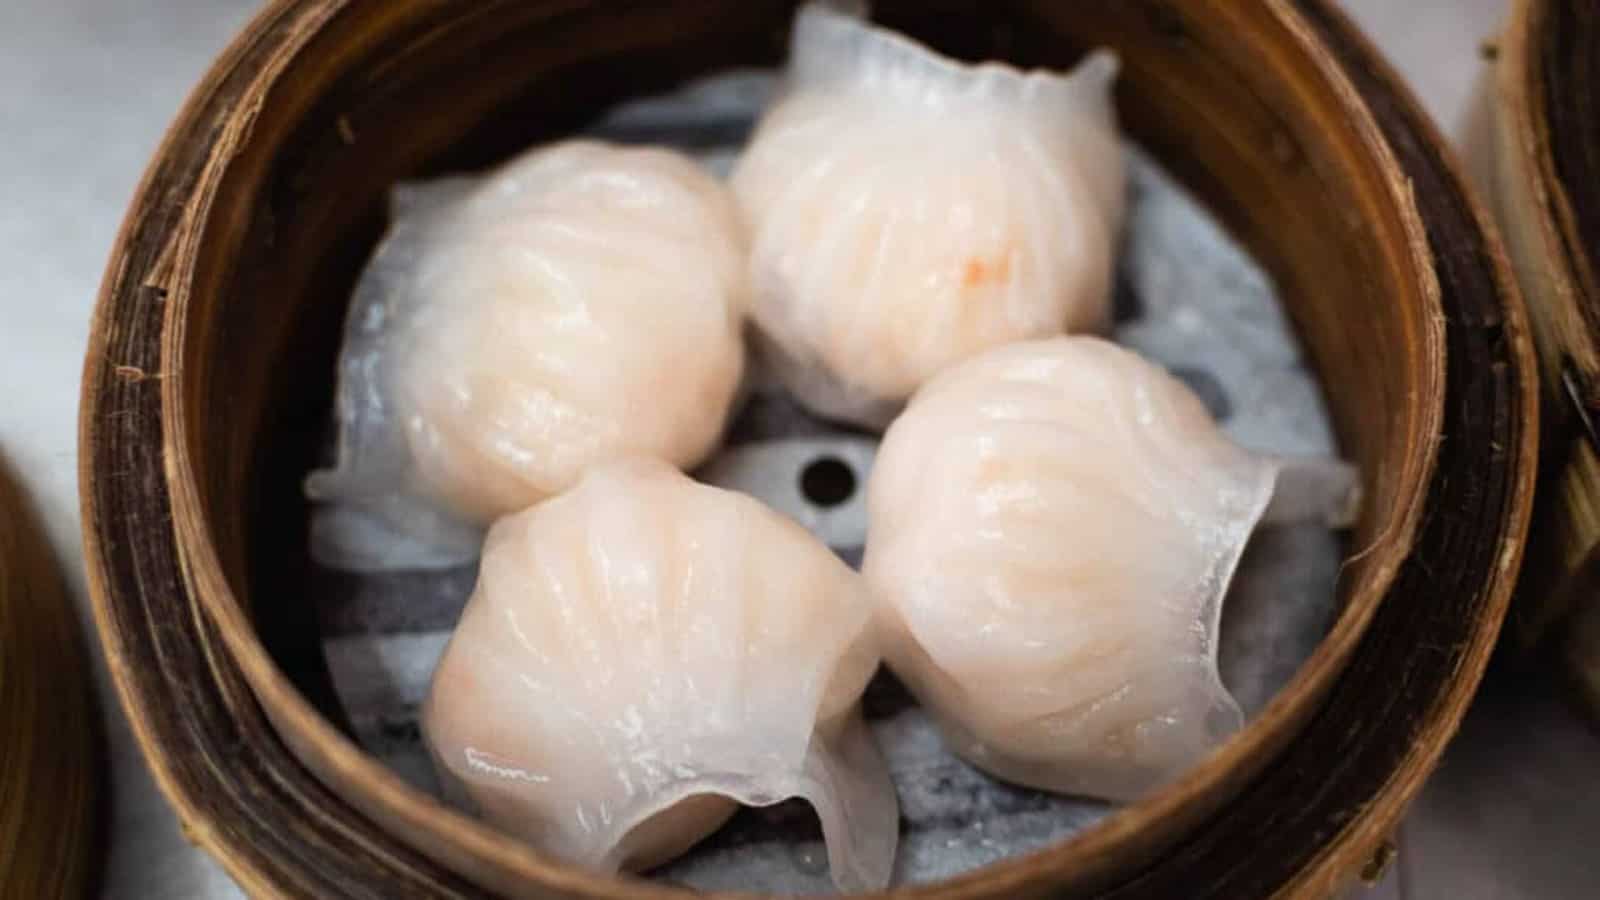 4 har gow shrimp dumplings in a bamboo steamer basket.